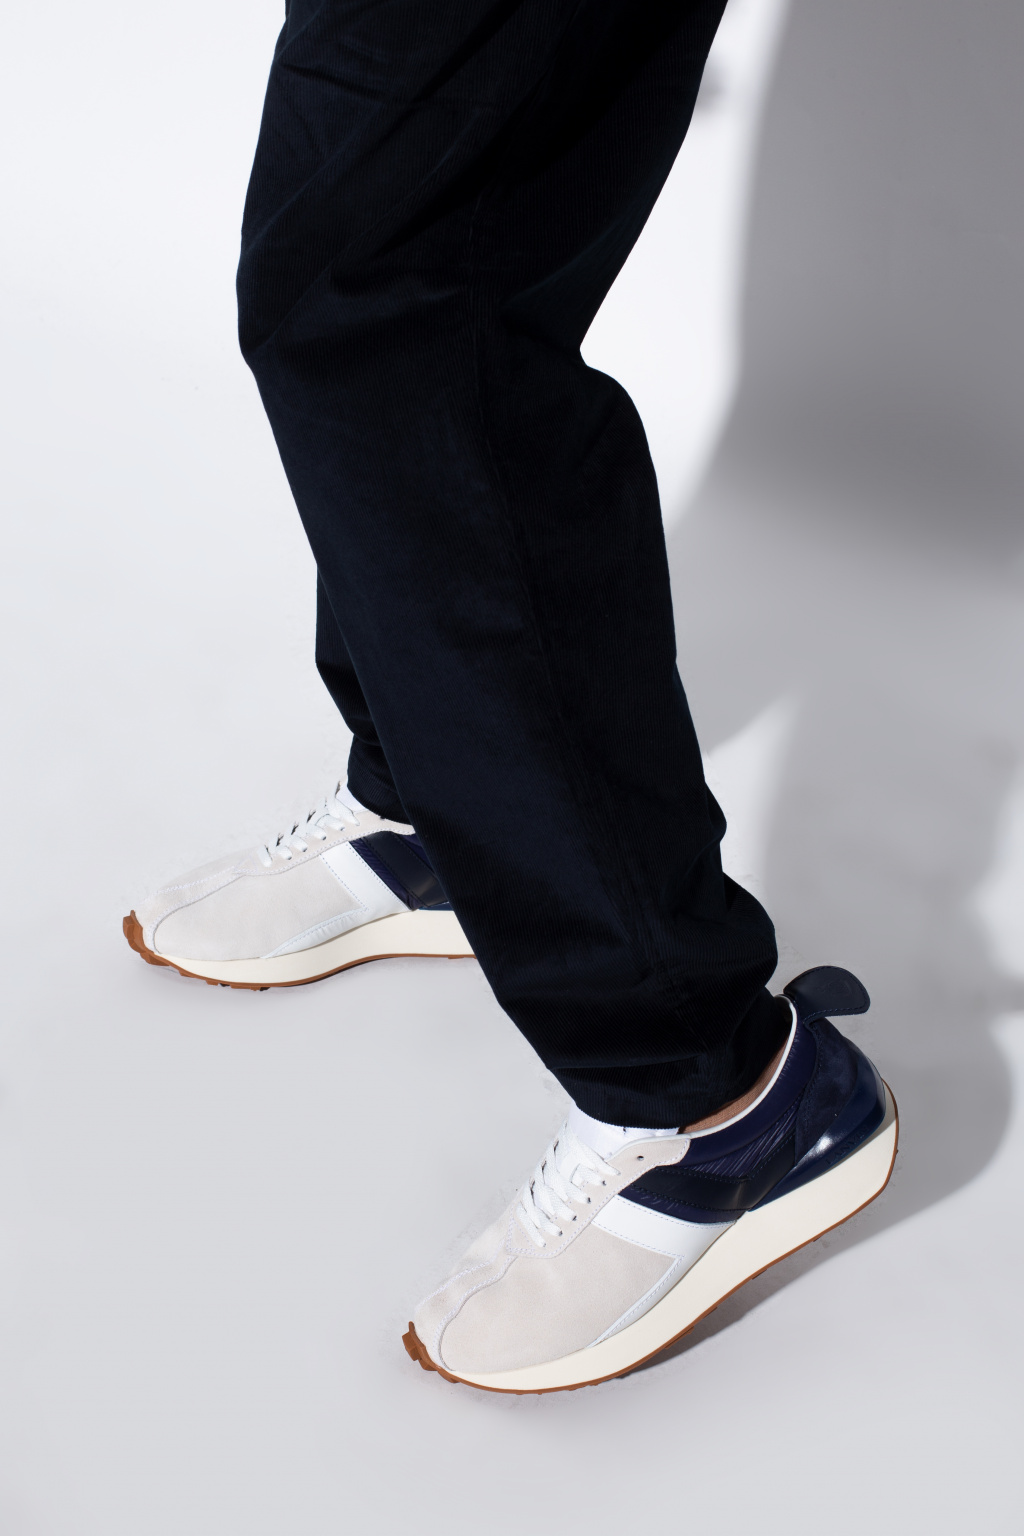 Lanvin ‘Bumpr’ sneakers | Men's Shoes | Vitkac